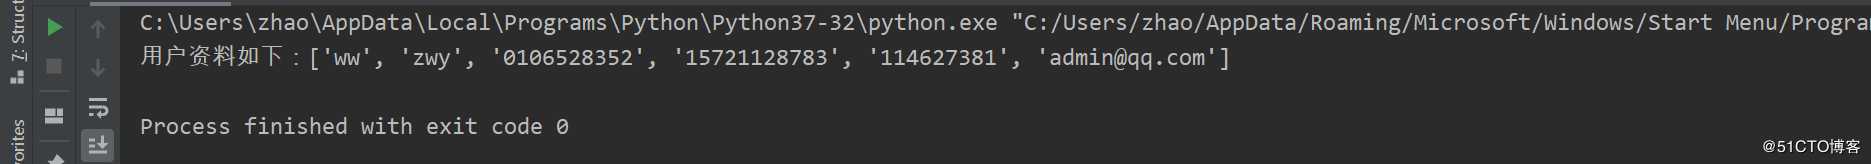 python 图形化编程---文本输入框